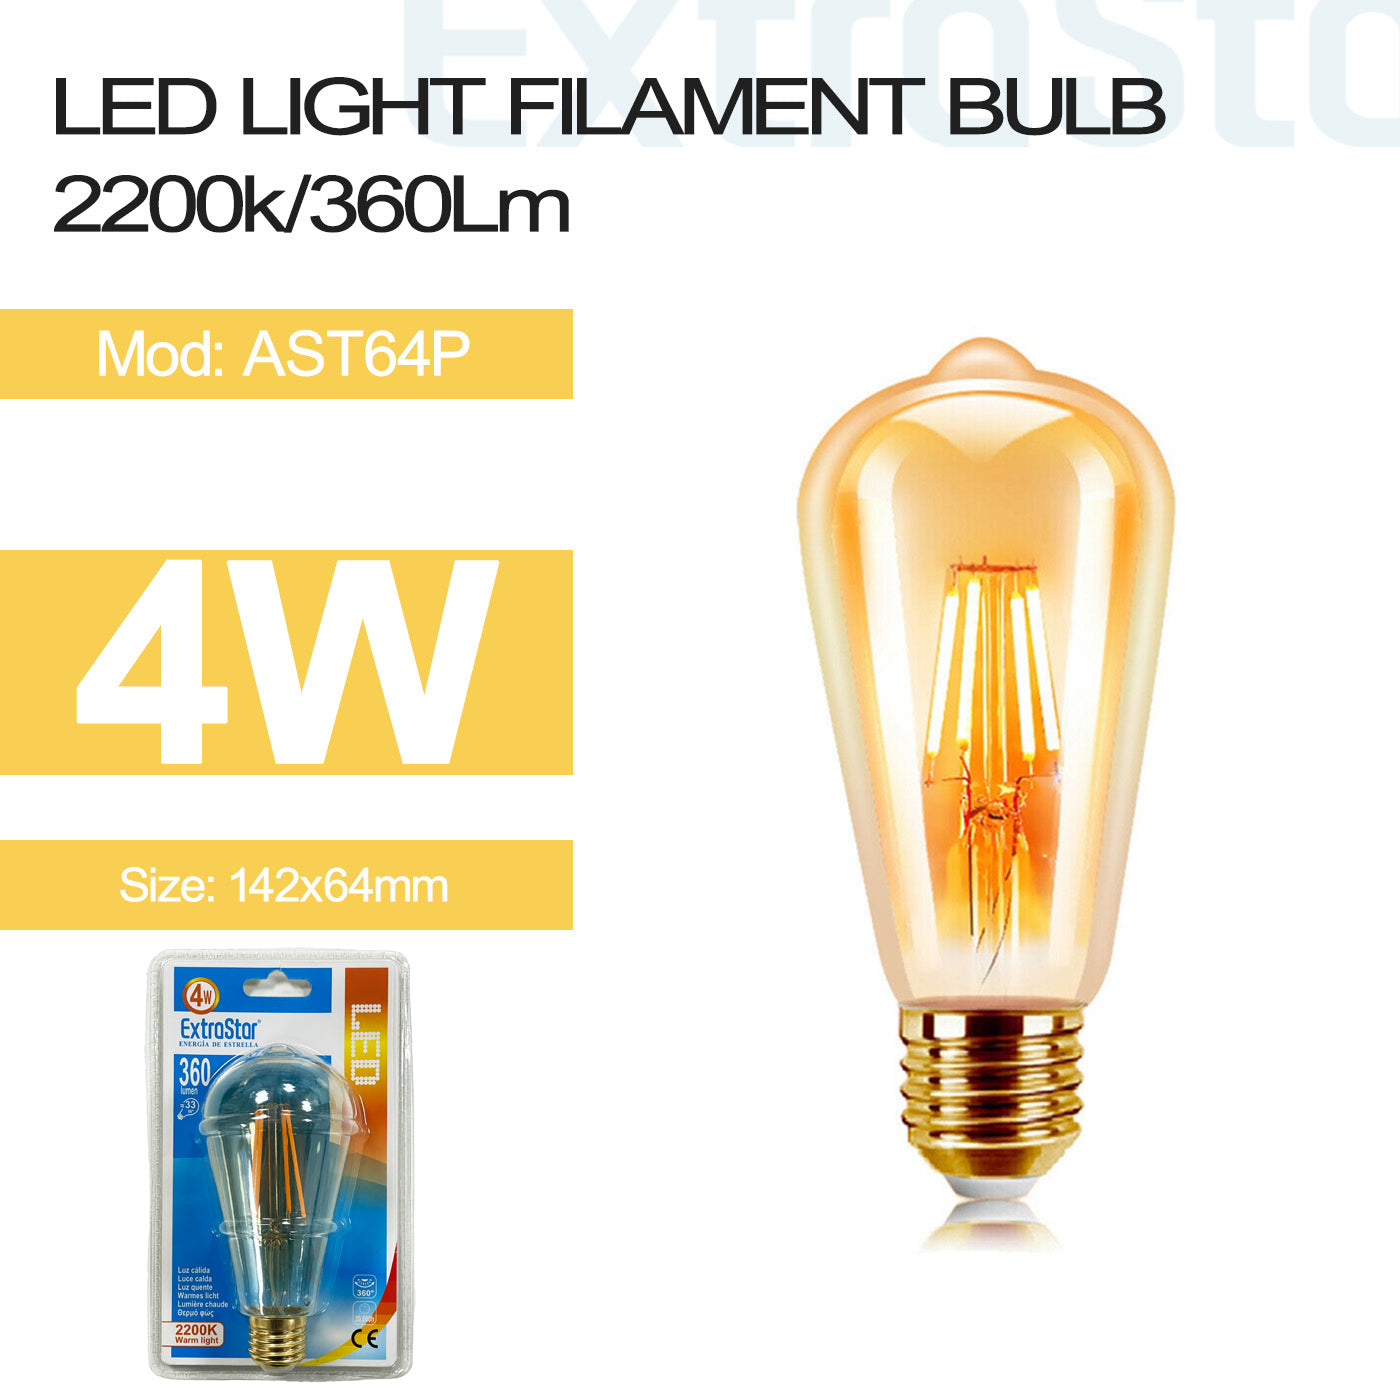 4W LED Filament Light Bulb E27, 2200K Clamshell (AST64P)